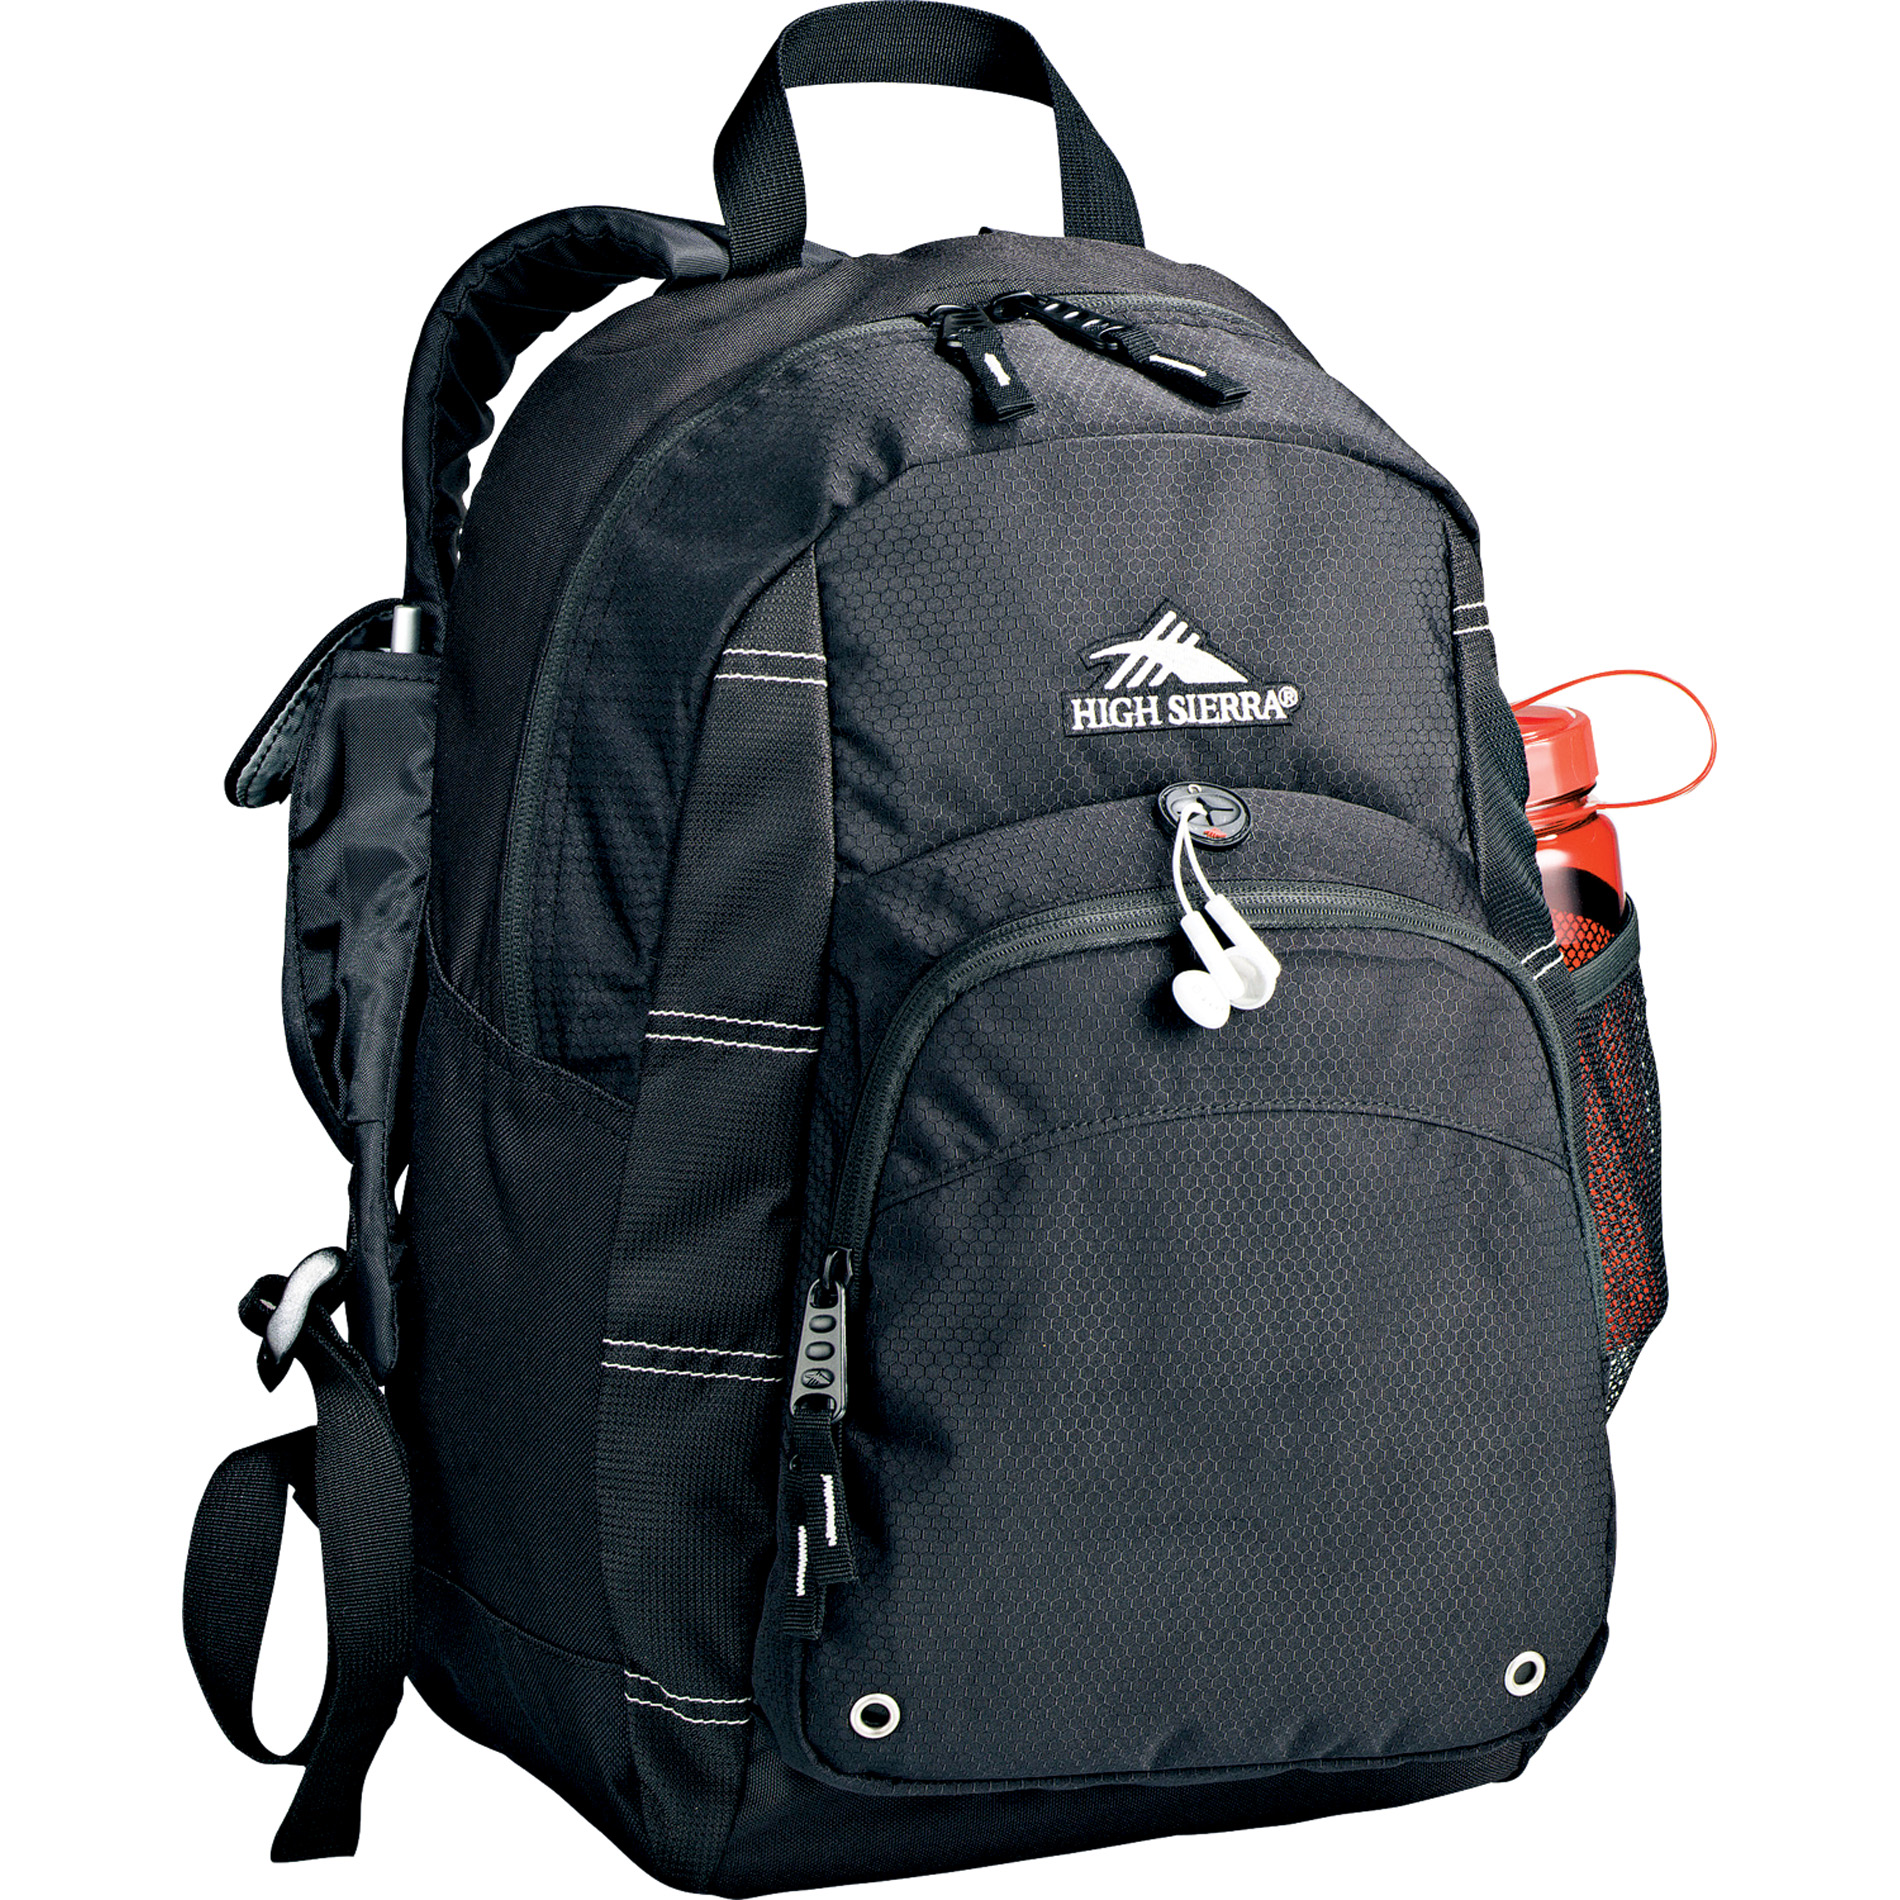 High Sierra 8050-12 - Impact Backpack